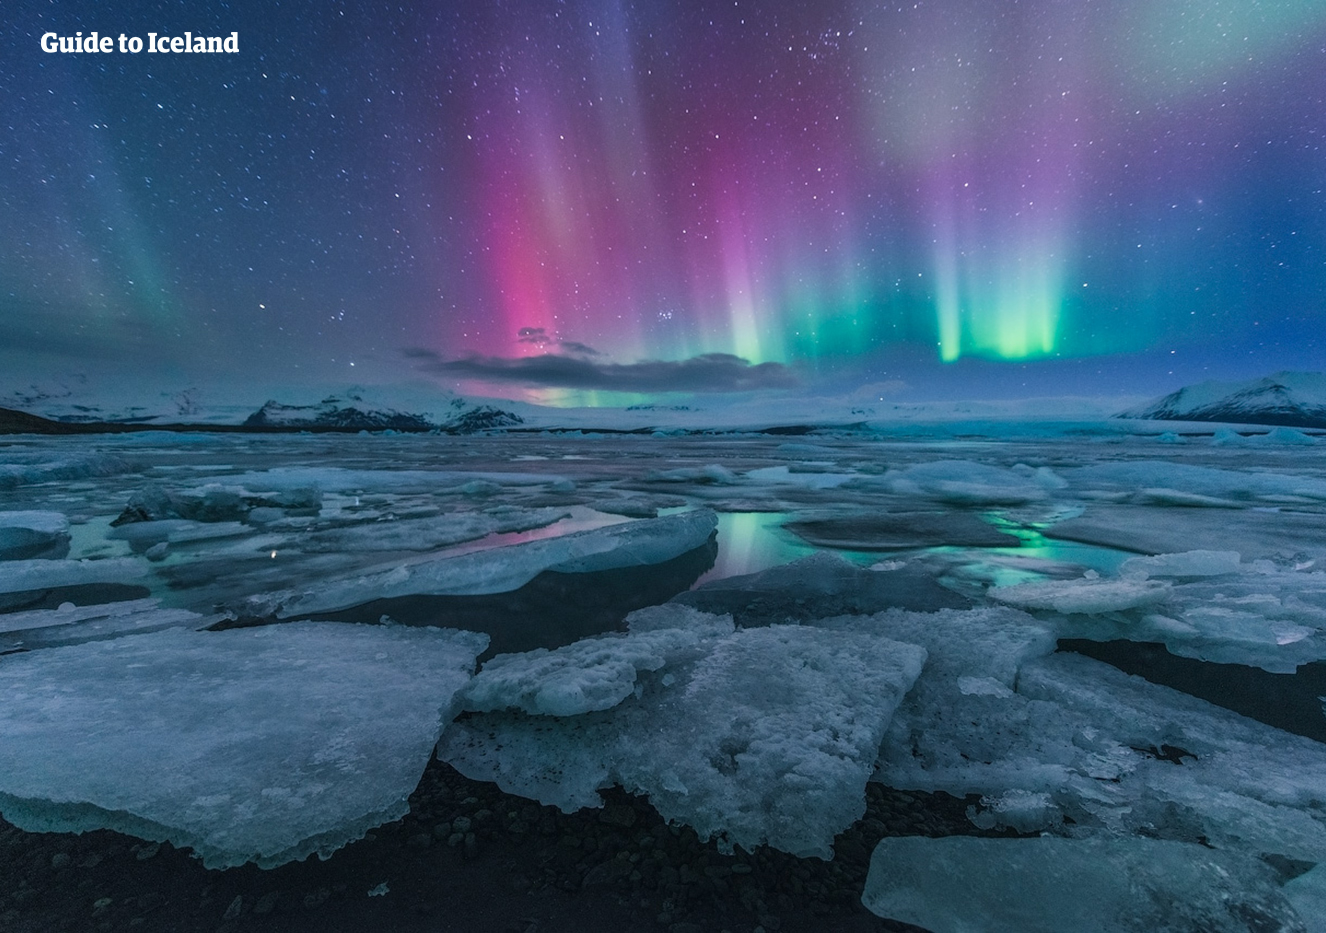 Forse vedrai l'Aurora Boreale che danza sulla laguna glaciale di Jökulsárlón durante questo tour invernale a basso costo.